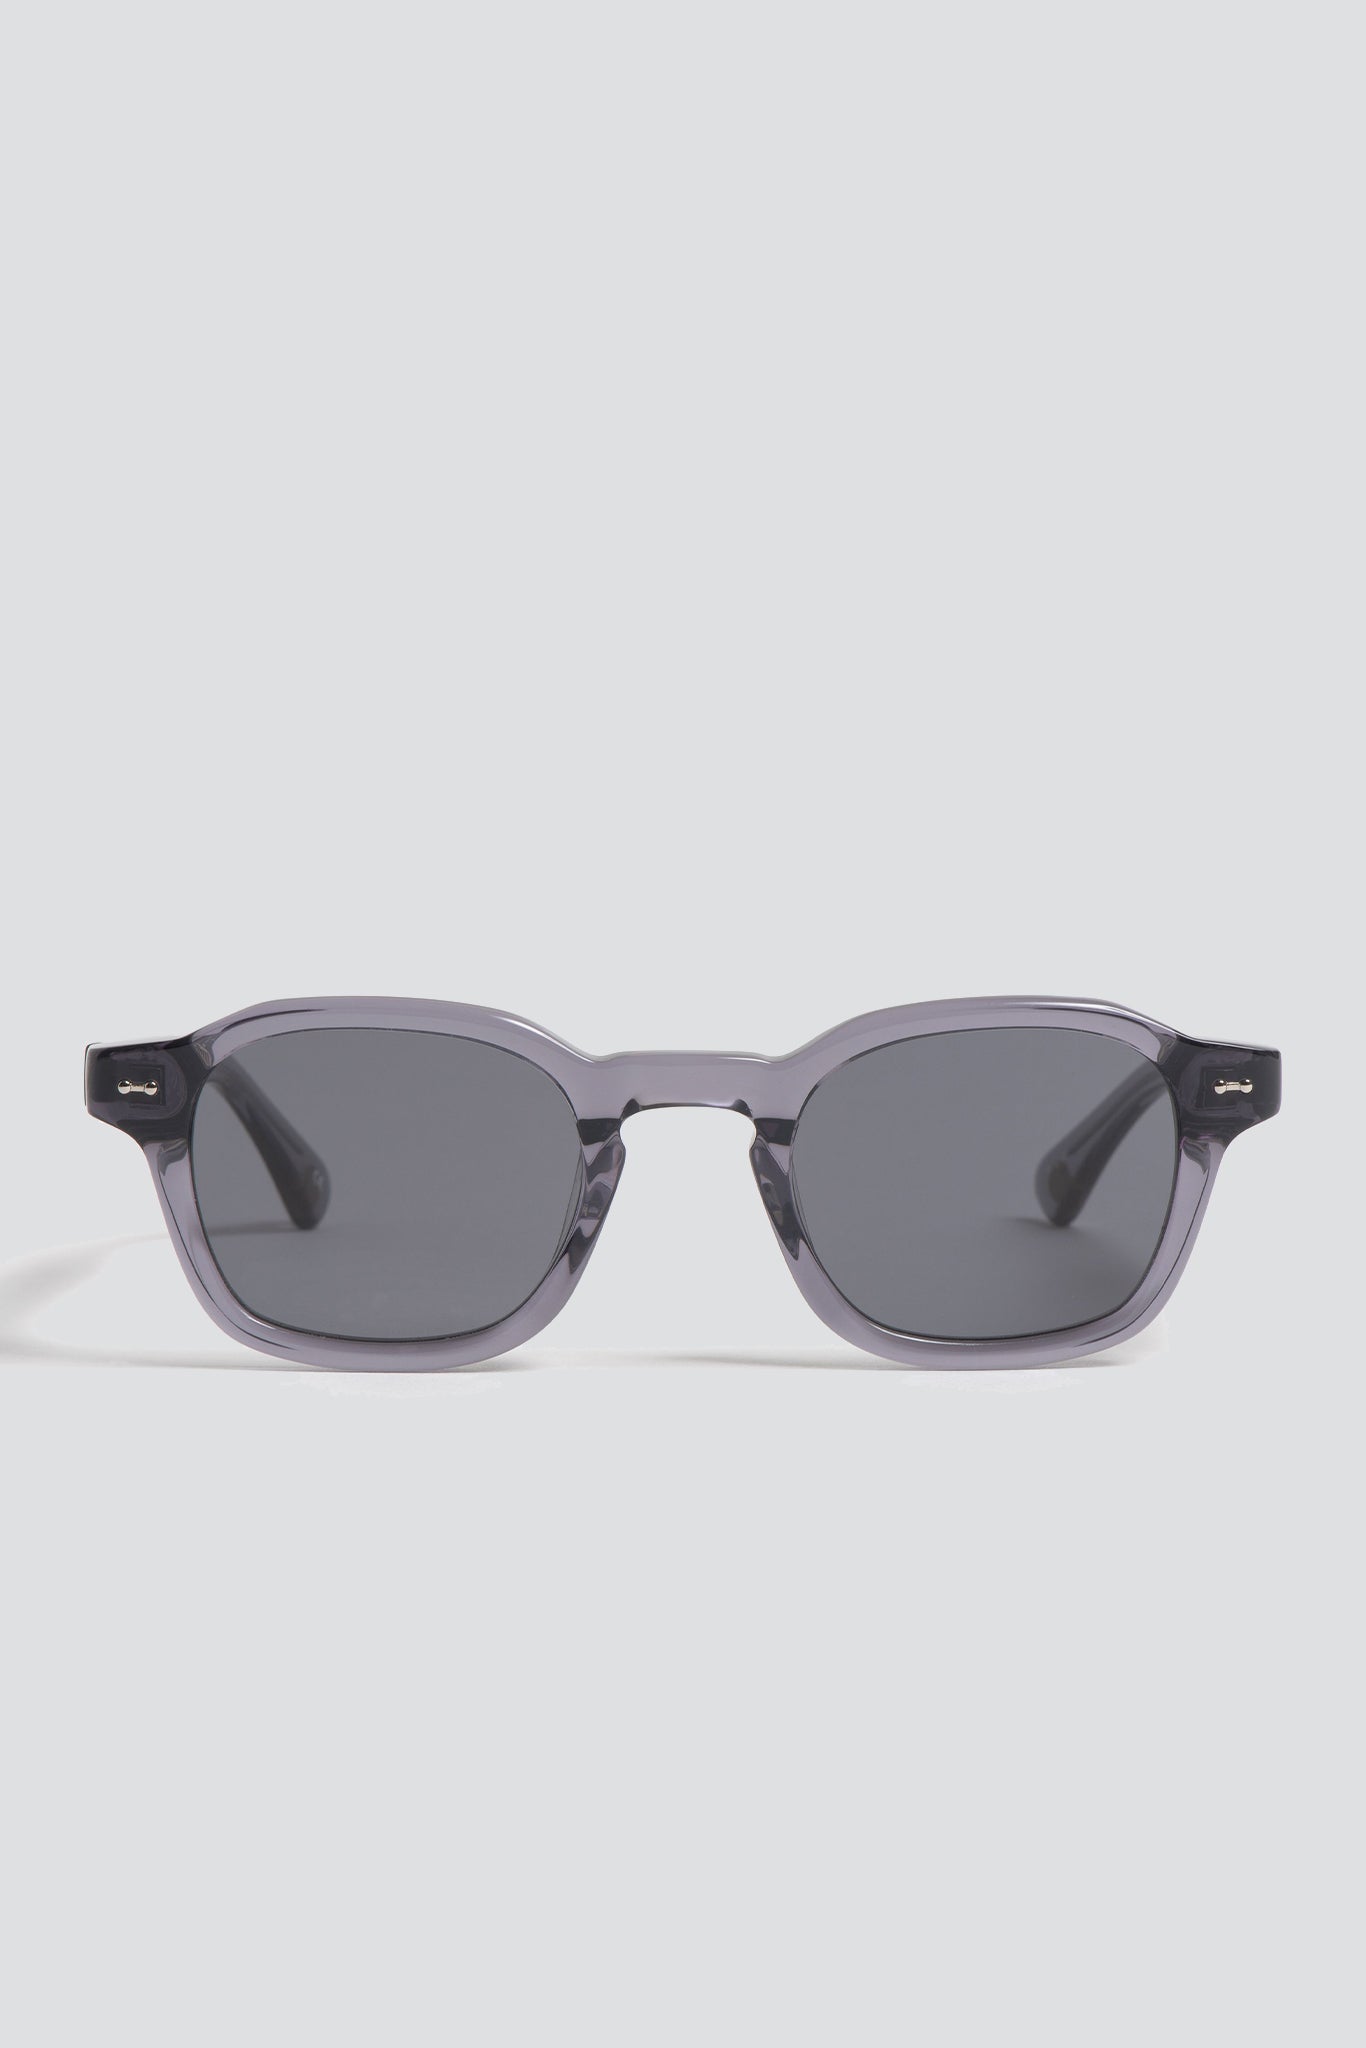 Robot Grey Hero Sunglasses